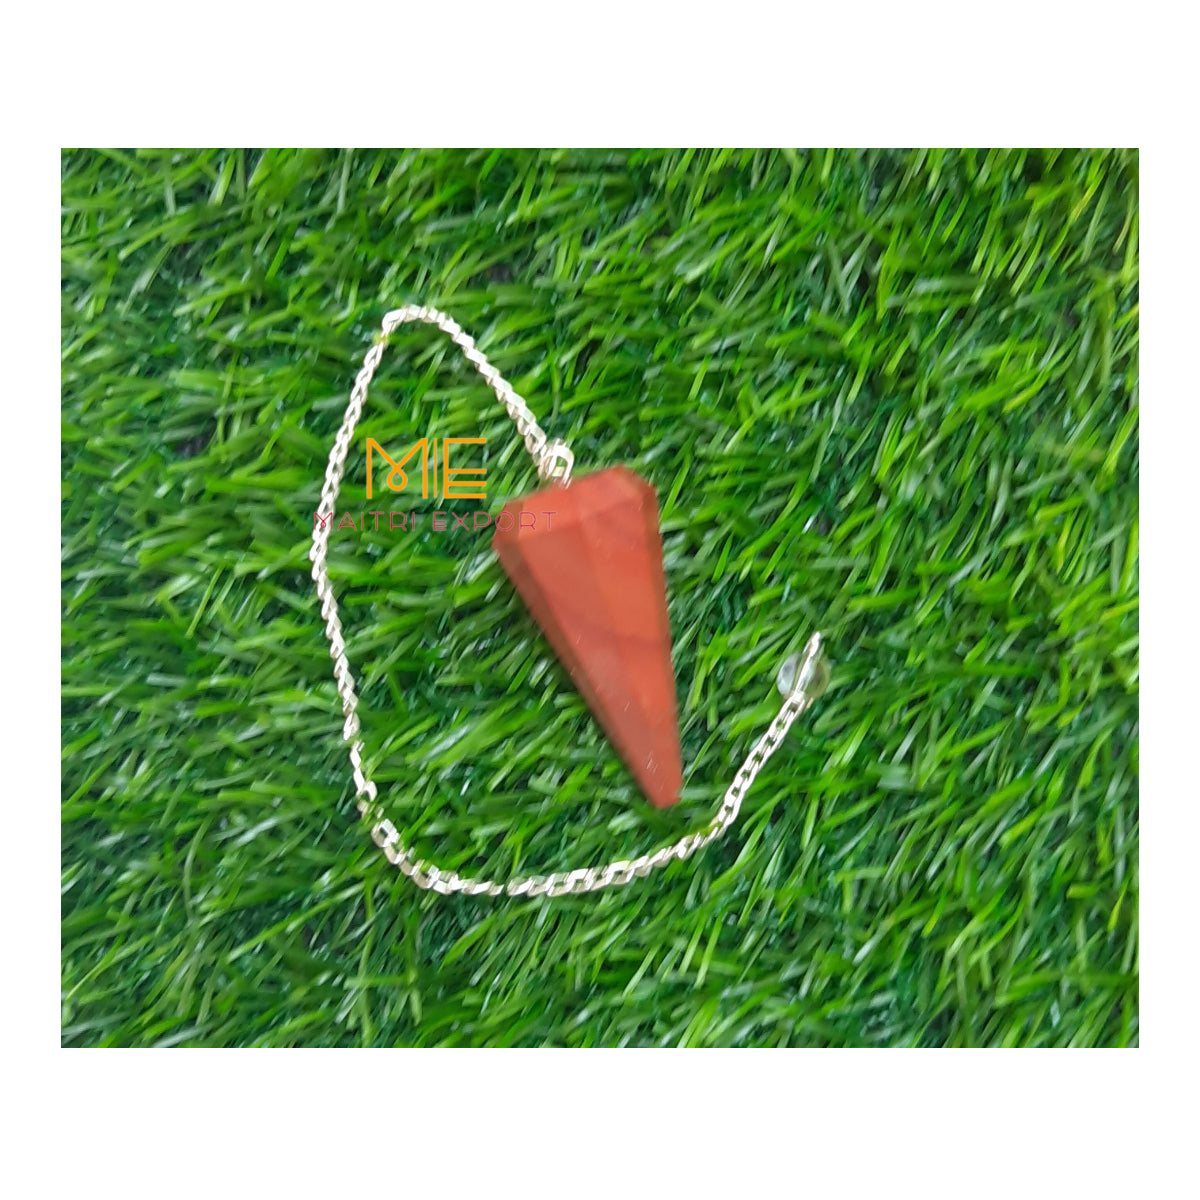 Cone shaped Pendulum-Maitri Export | Crystals Store